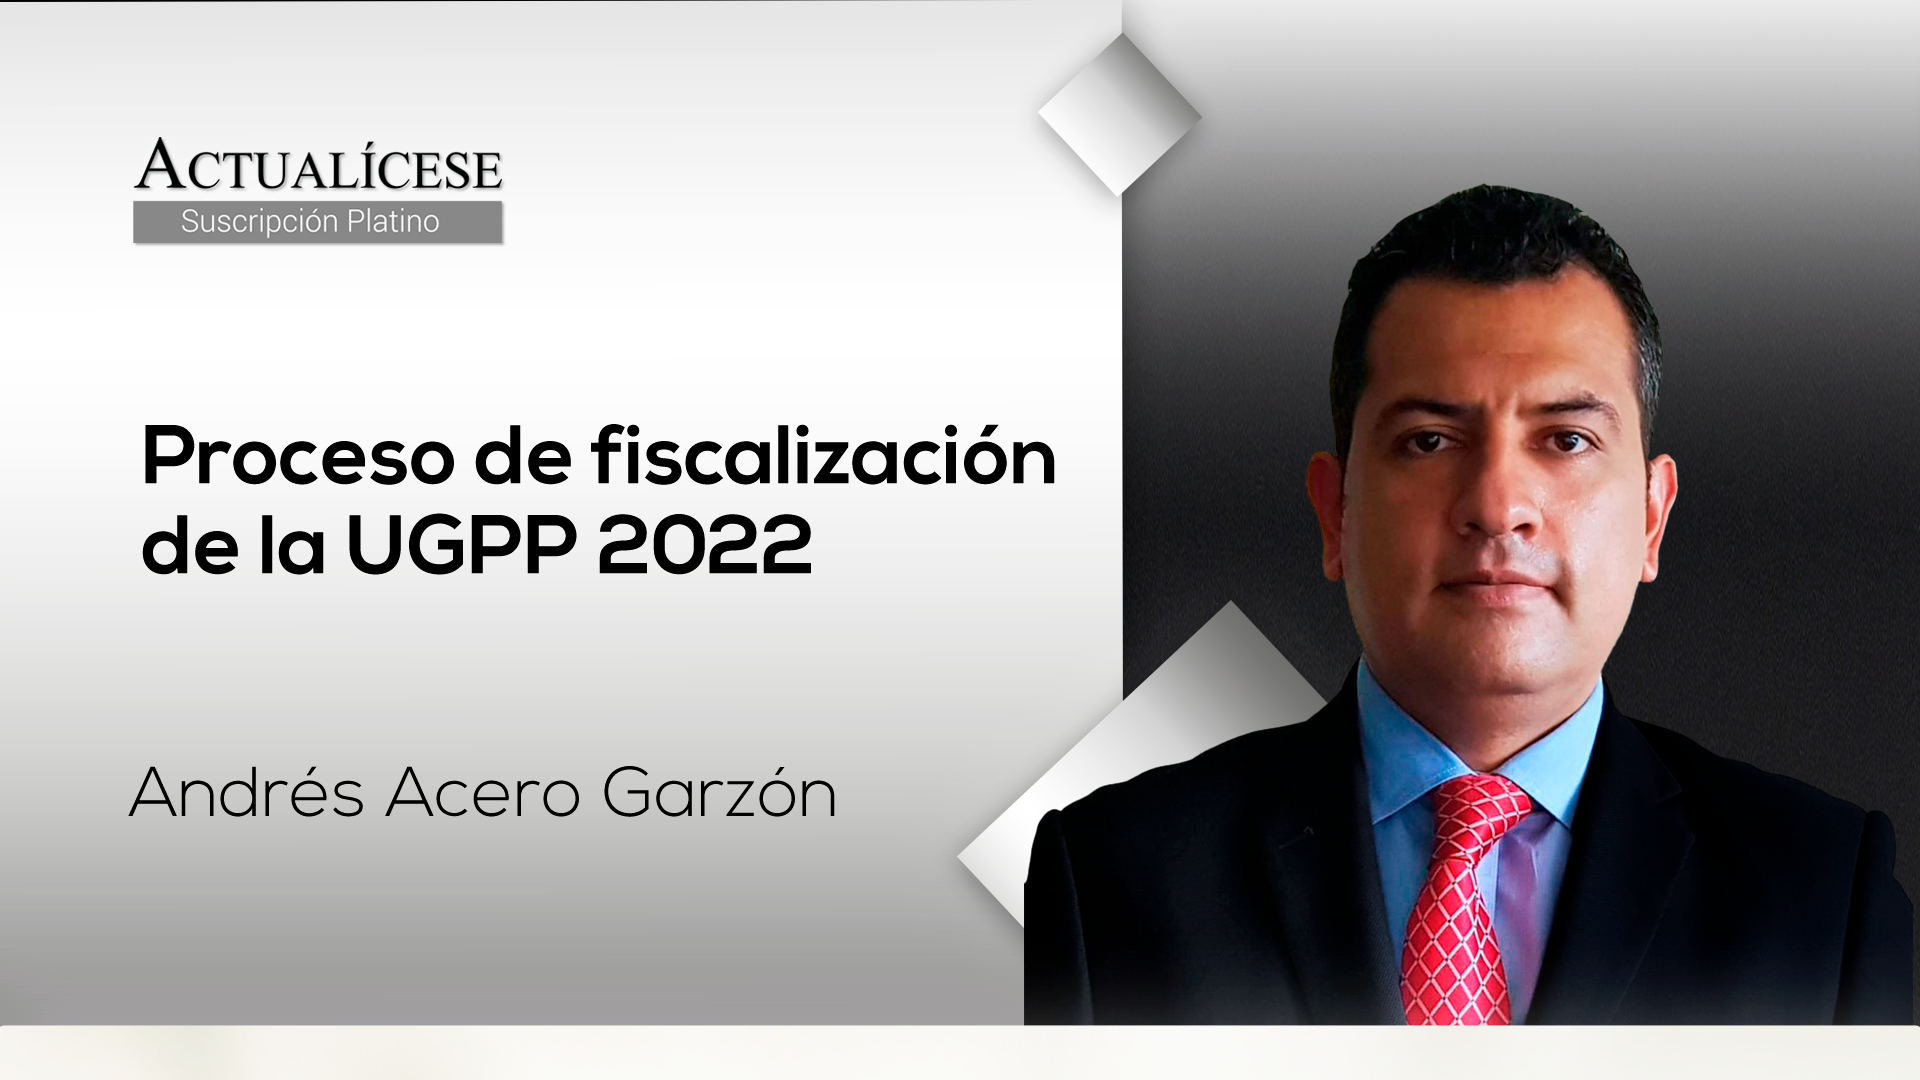 Procesos de fiscalización de la UGPP 2022 